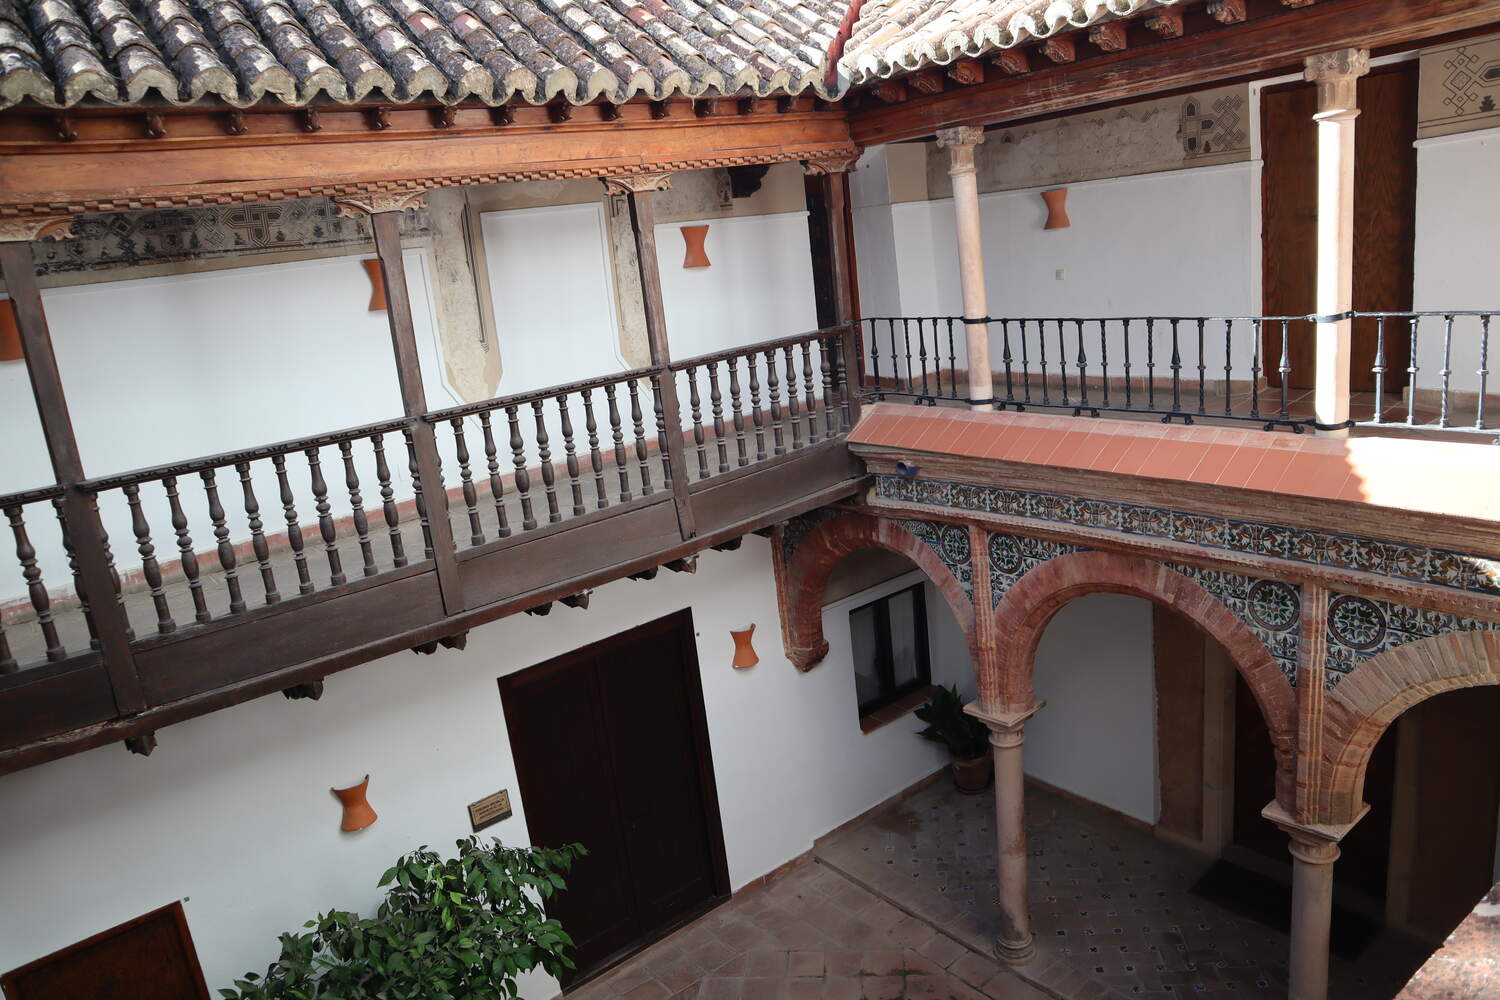 Views-of-the-courtyard-at-the-Palacio-de-Mondragon Is Ronda Worth Visiting